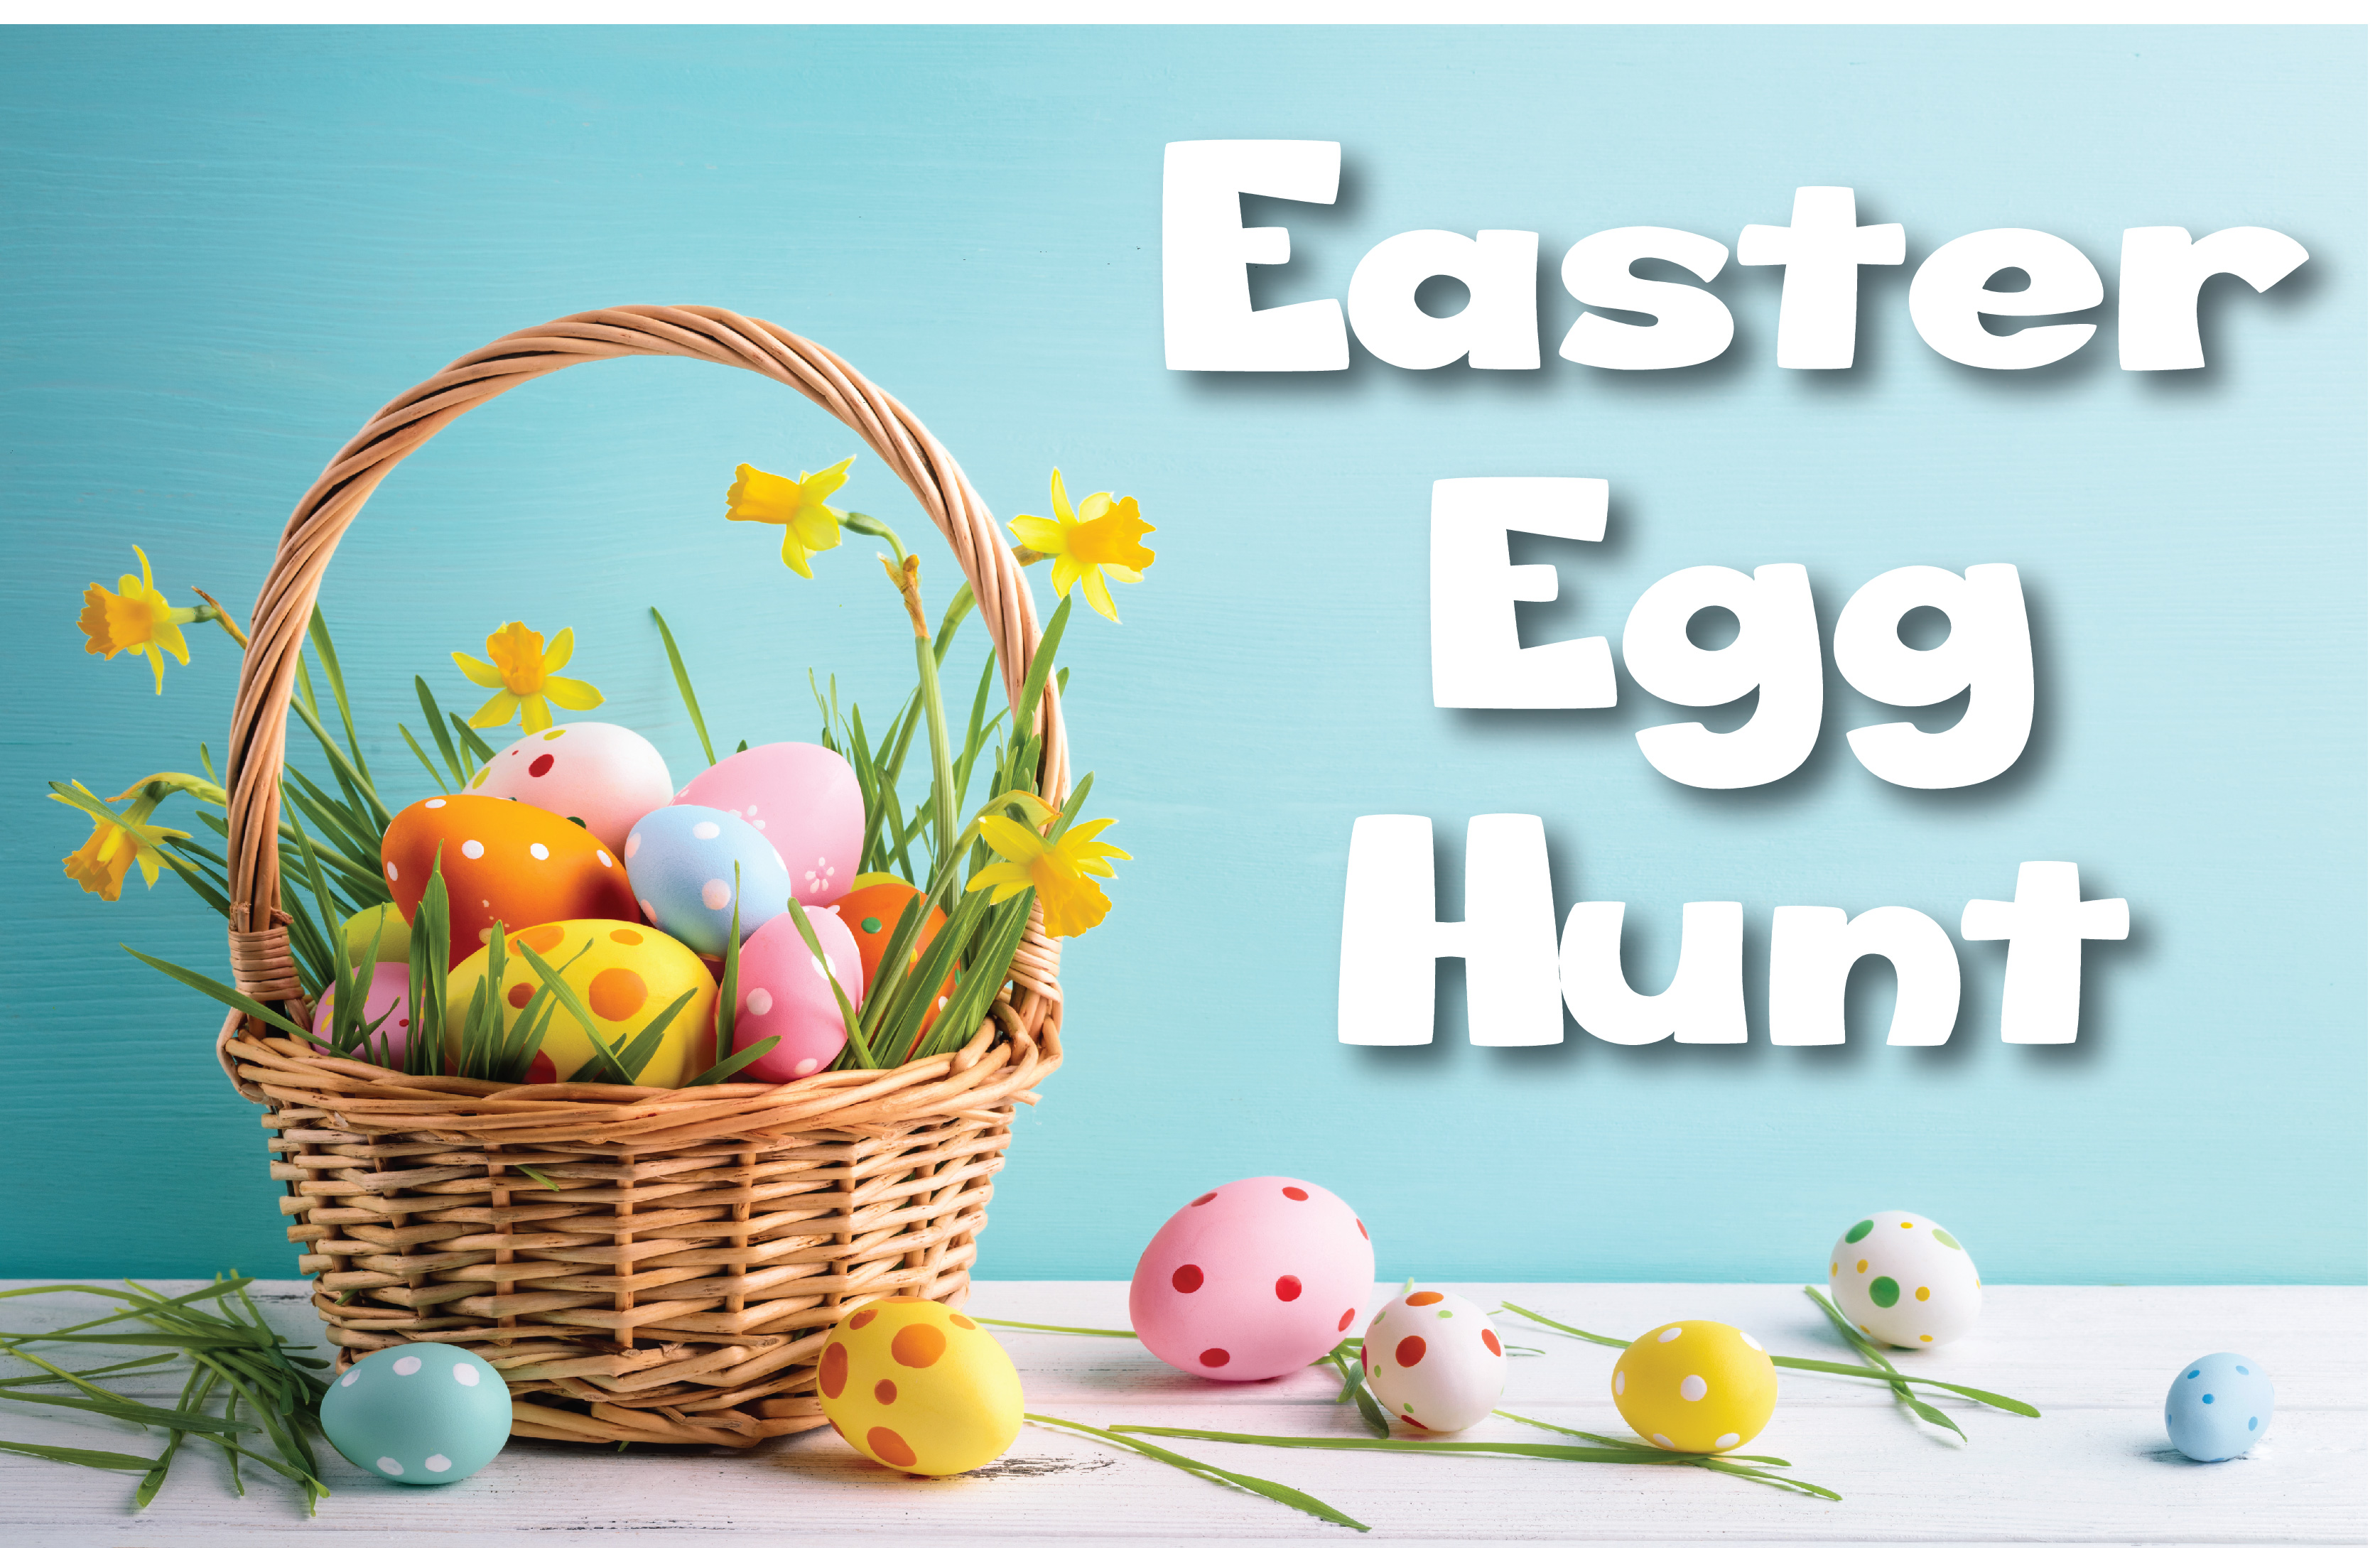 Copperbrook Community Easter Egg Hunt Set for March 31